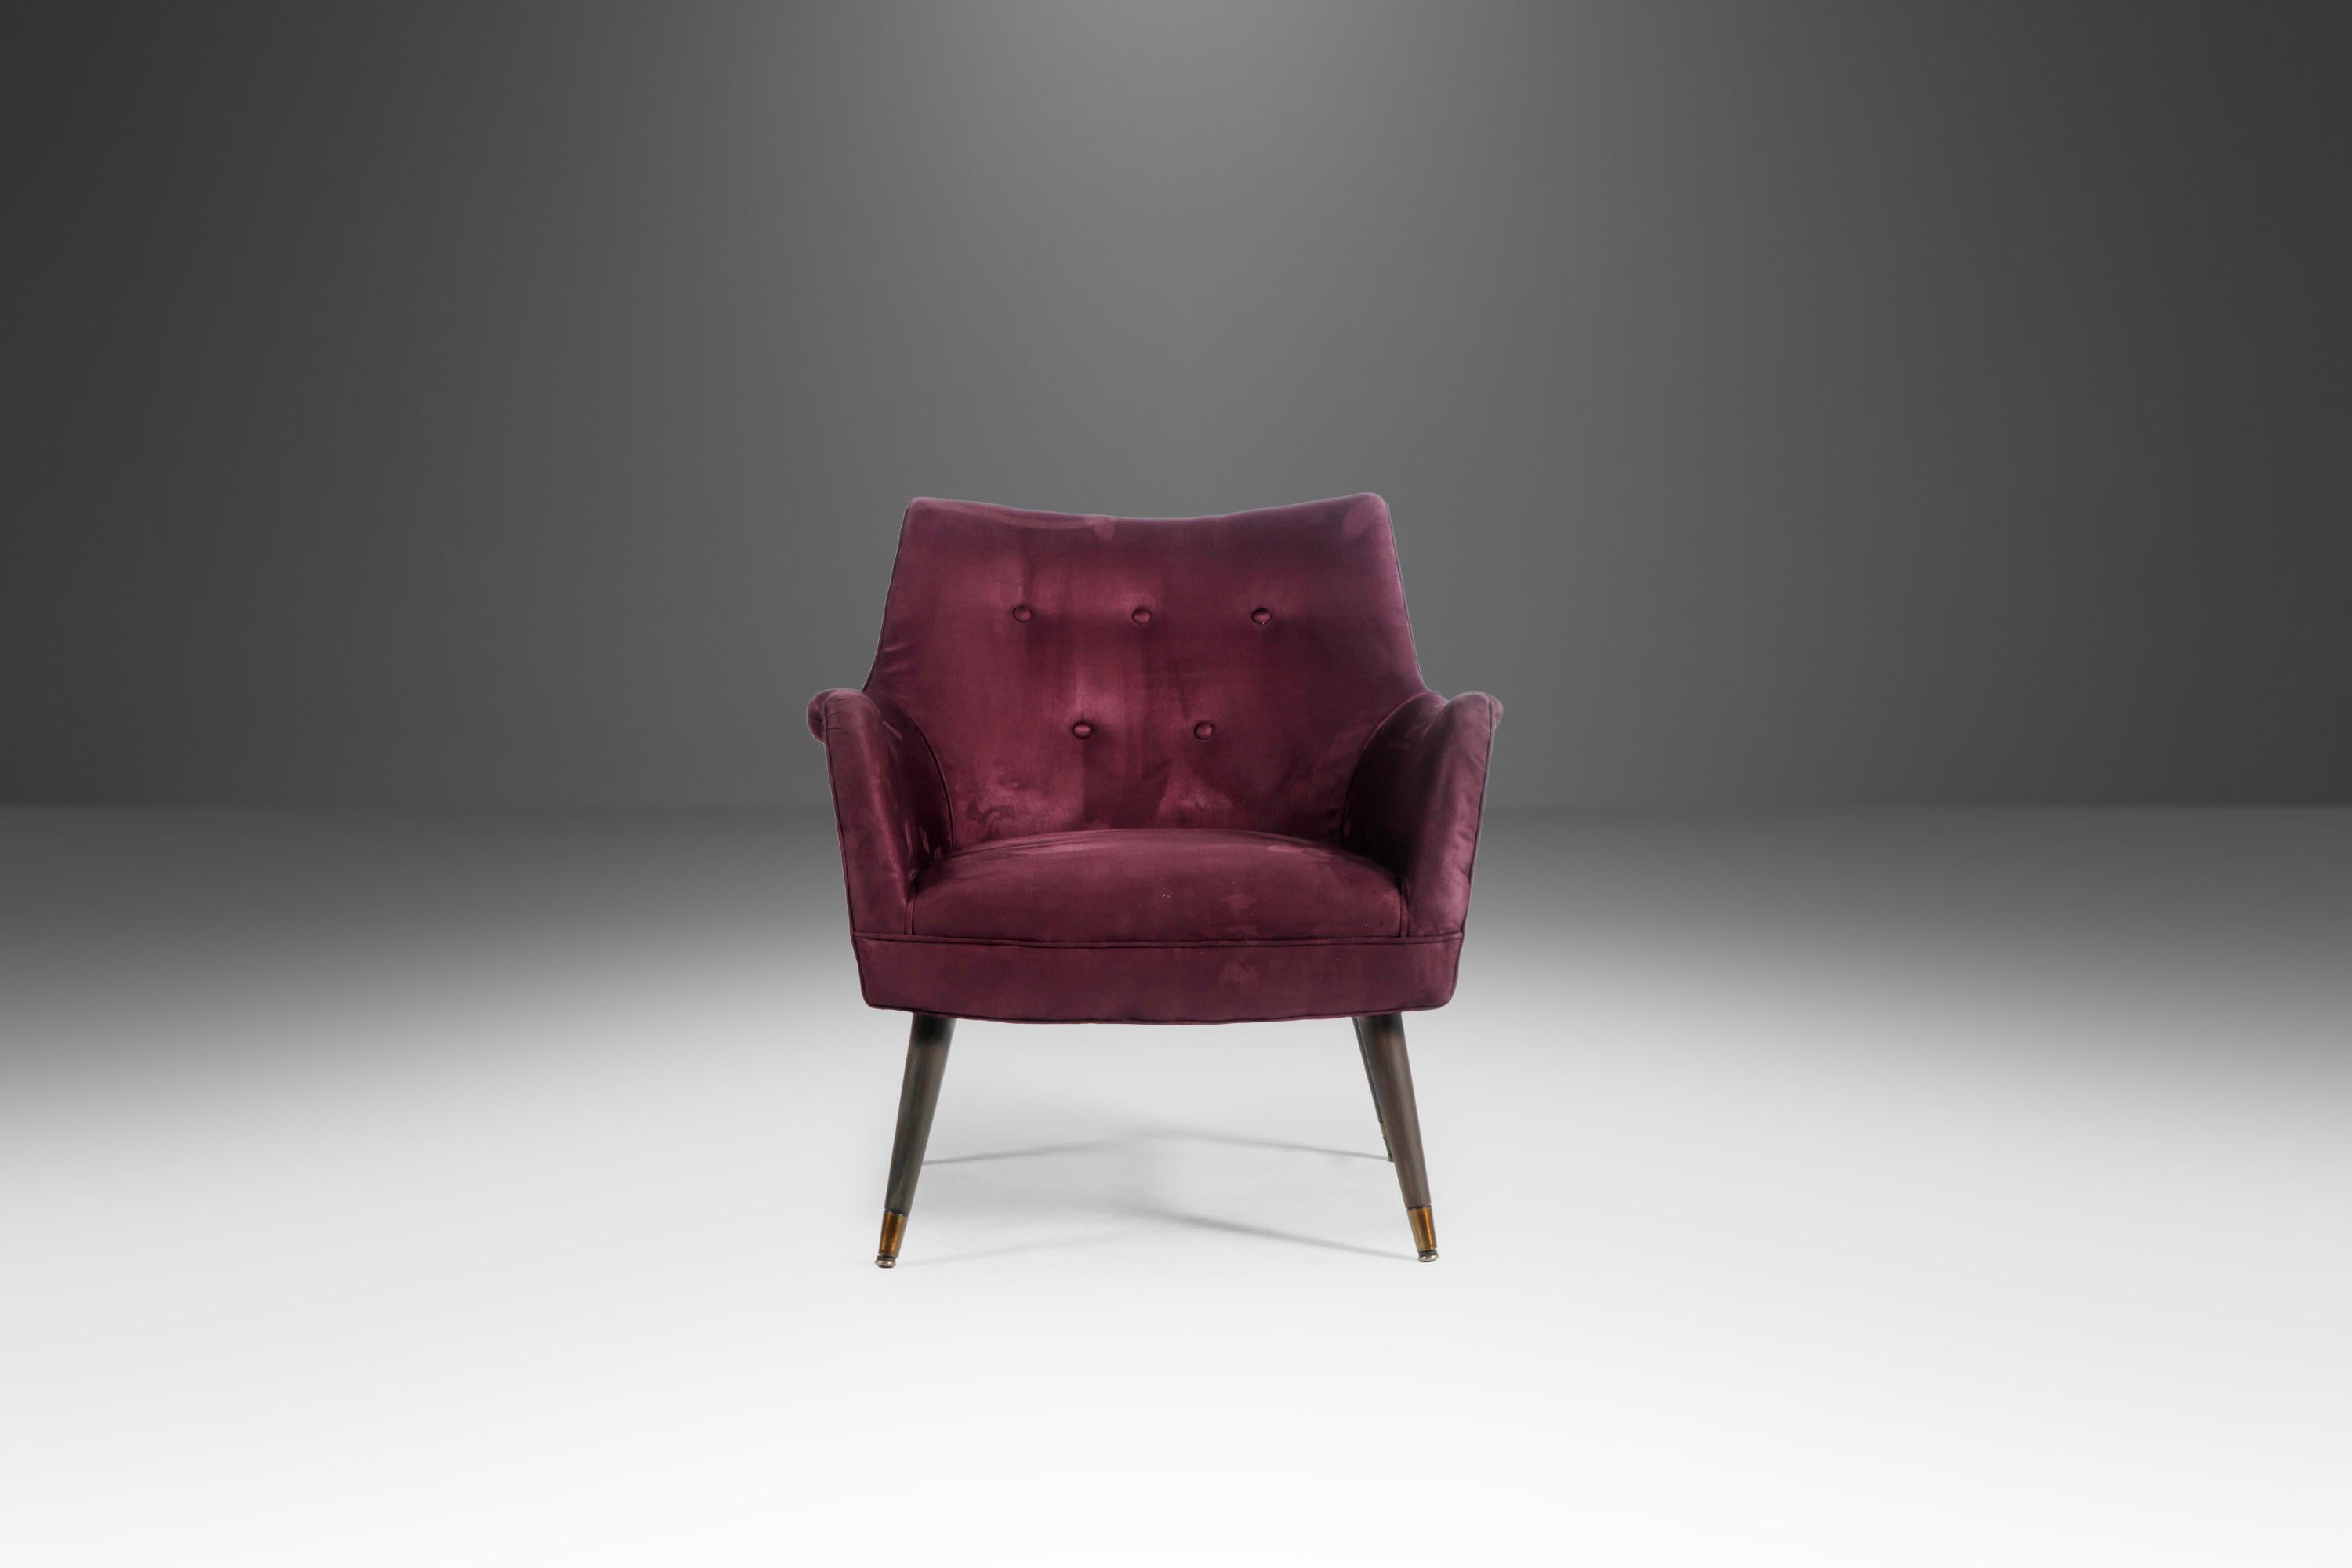 Die perfekte Verschmelzung von luxuriösen MATERIALEN und fesselnden Formen machen diese exquisiten Sessel zum perfekten Sitzmöbel für fast jeden Raum, ob zu Hause oder im Büro. Das fabelhafte Mikro-Wildleder in tiefem Violett ist nicht nur bequem,